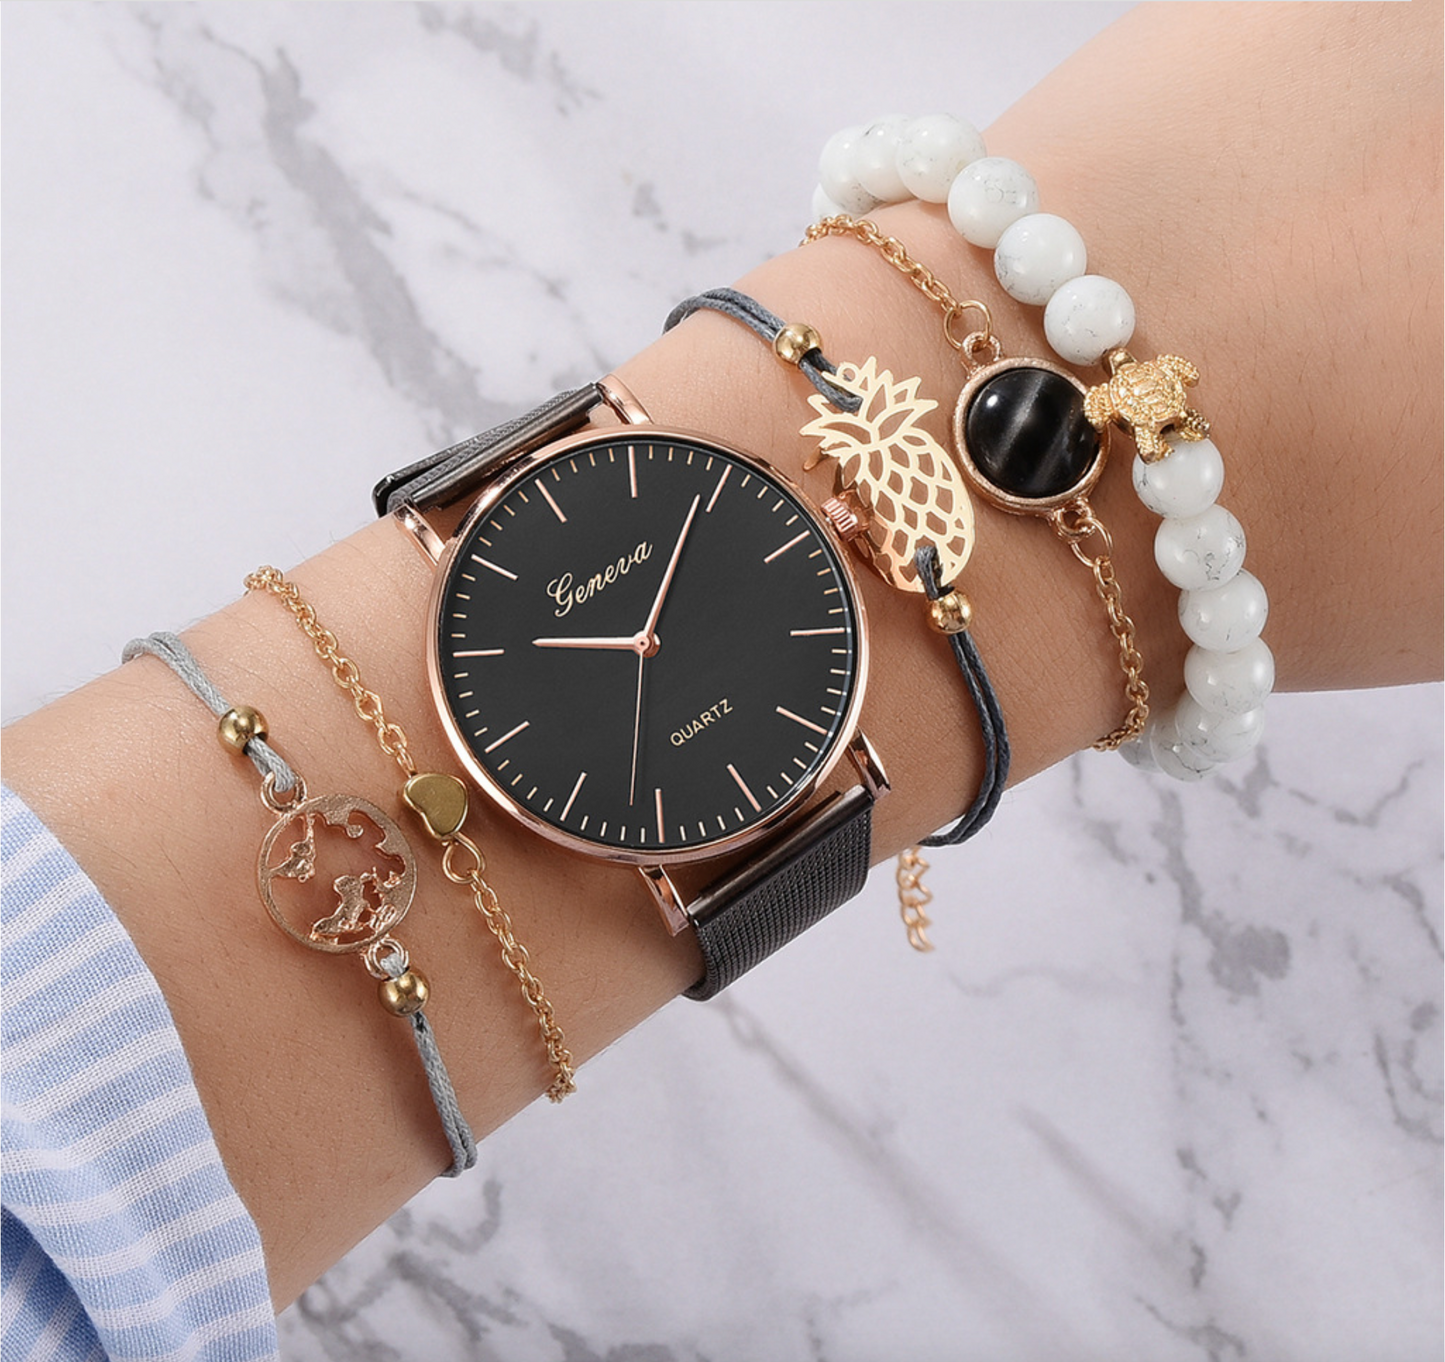 Goldtone Watch Bracelet Set